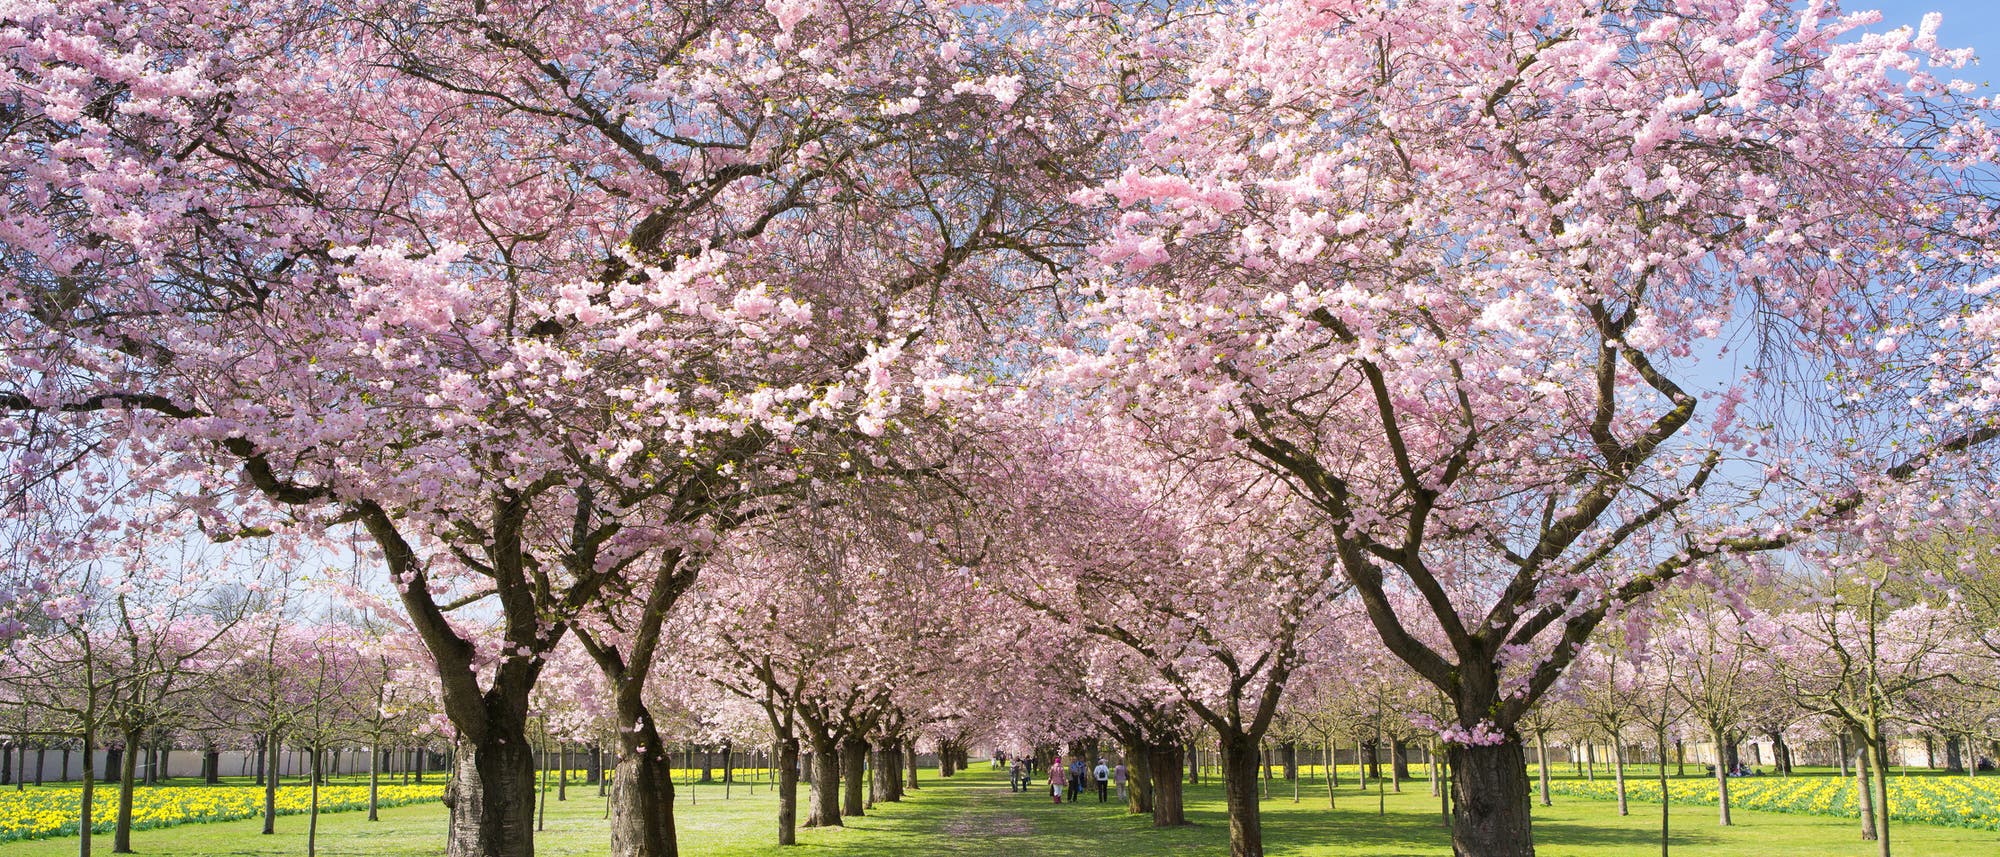 Mandelblüte in einem Park